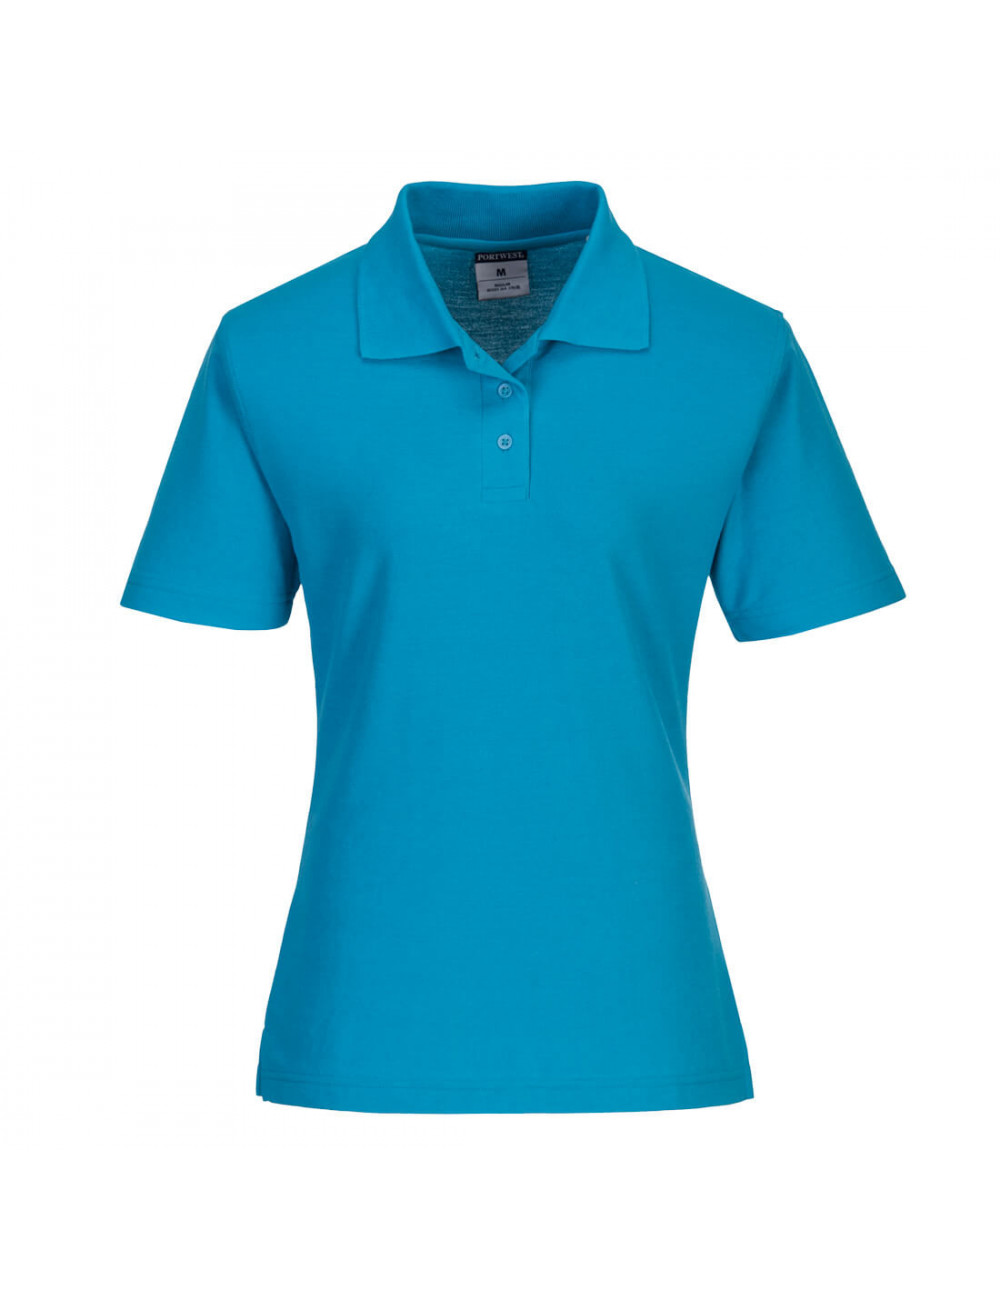 Blaugrünes Poloshirt für Damen von Portwest